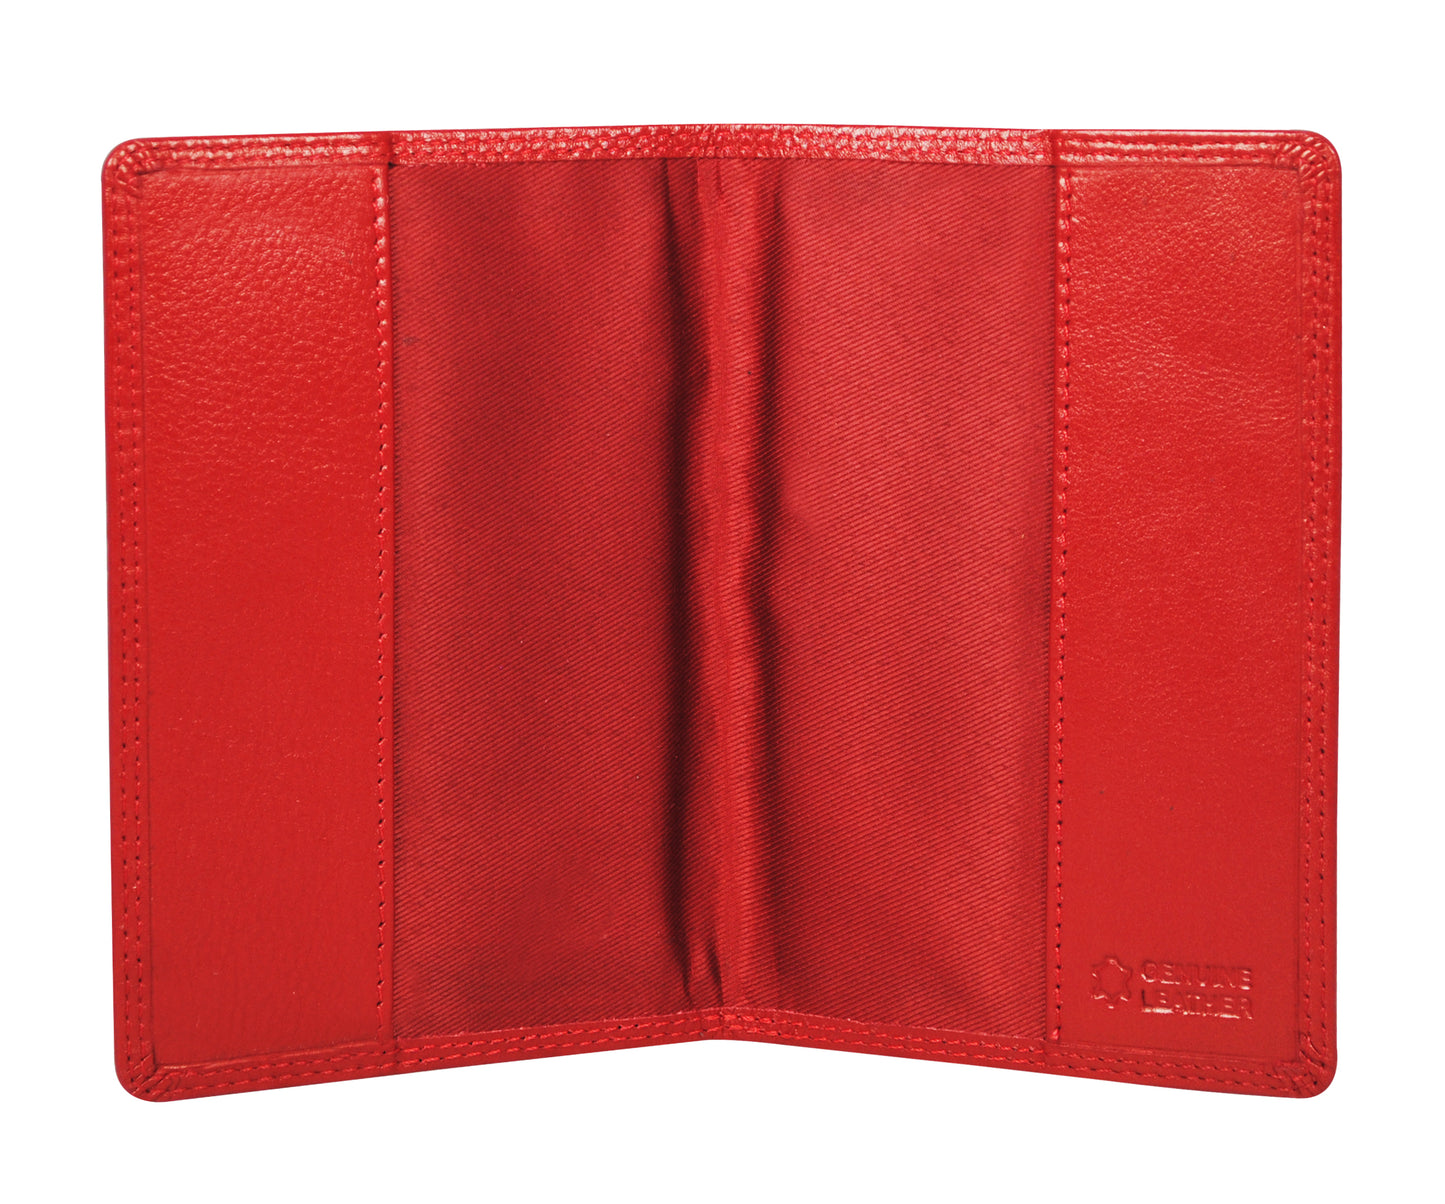 Calfnero Genuine Leather Passport Wallet-Passport Holder (P10-Red)